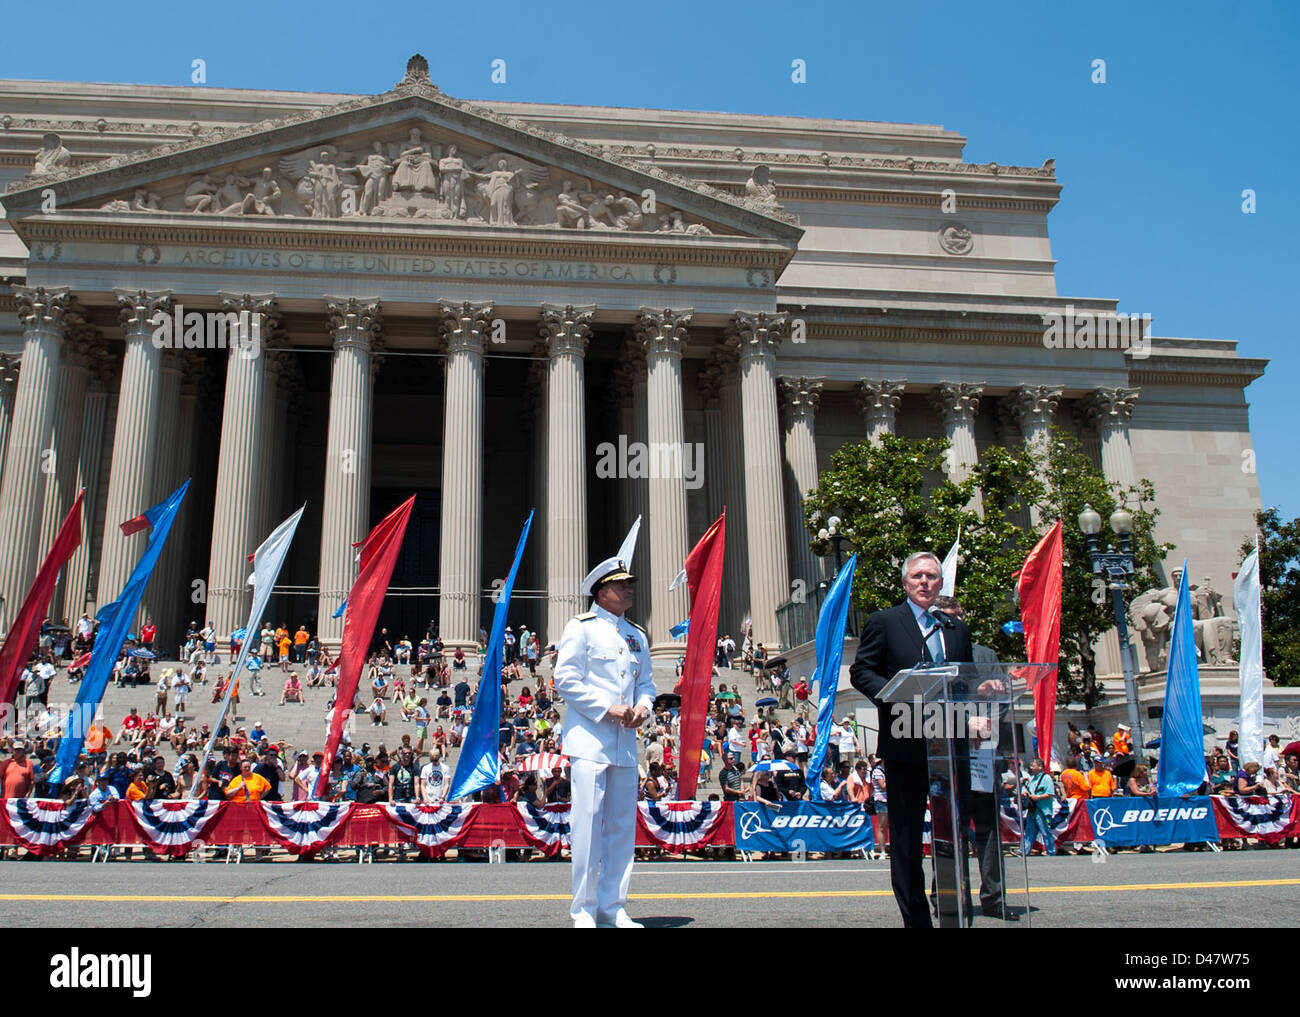 Il SECNAV offre un commento come la revisione di officer per la National Memorial Day Parade di Washington, D.C. Foto Stock